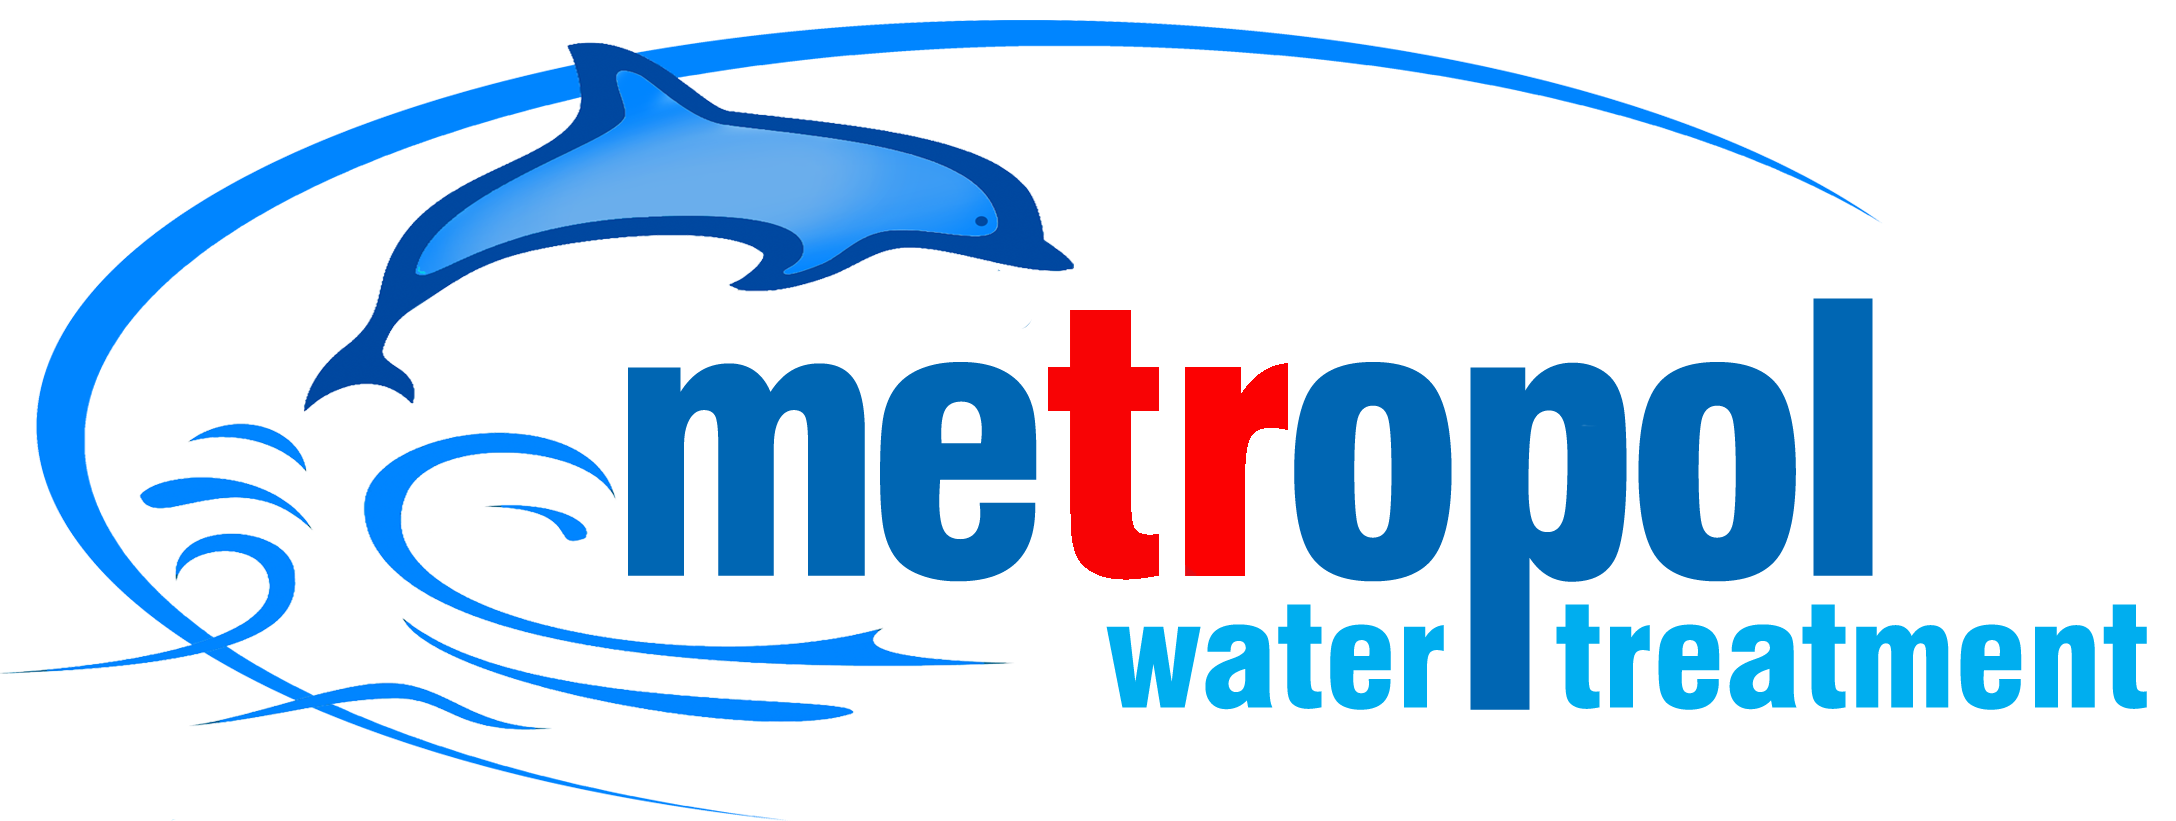 9 Aşamalı Pompalı Su Arıtma Cihazı - Metropol Su Arıtma Cİhazları- Ev Tipi- Toptan ve Perakende Su Arıtma Cİhazları